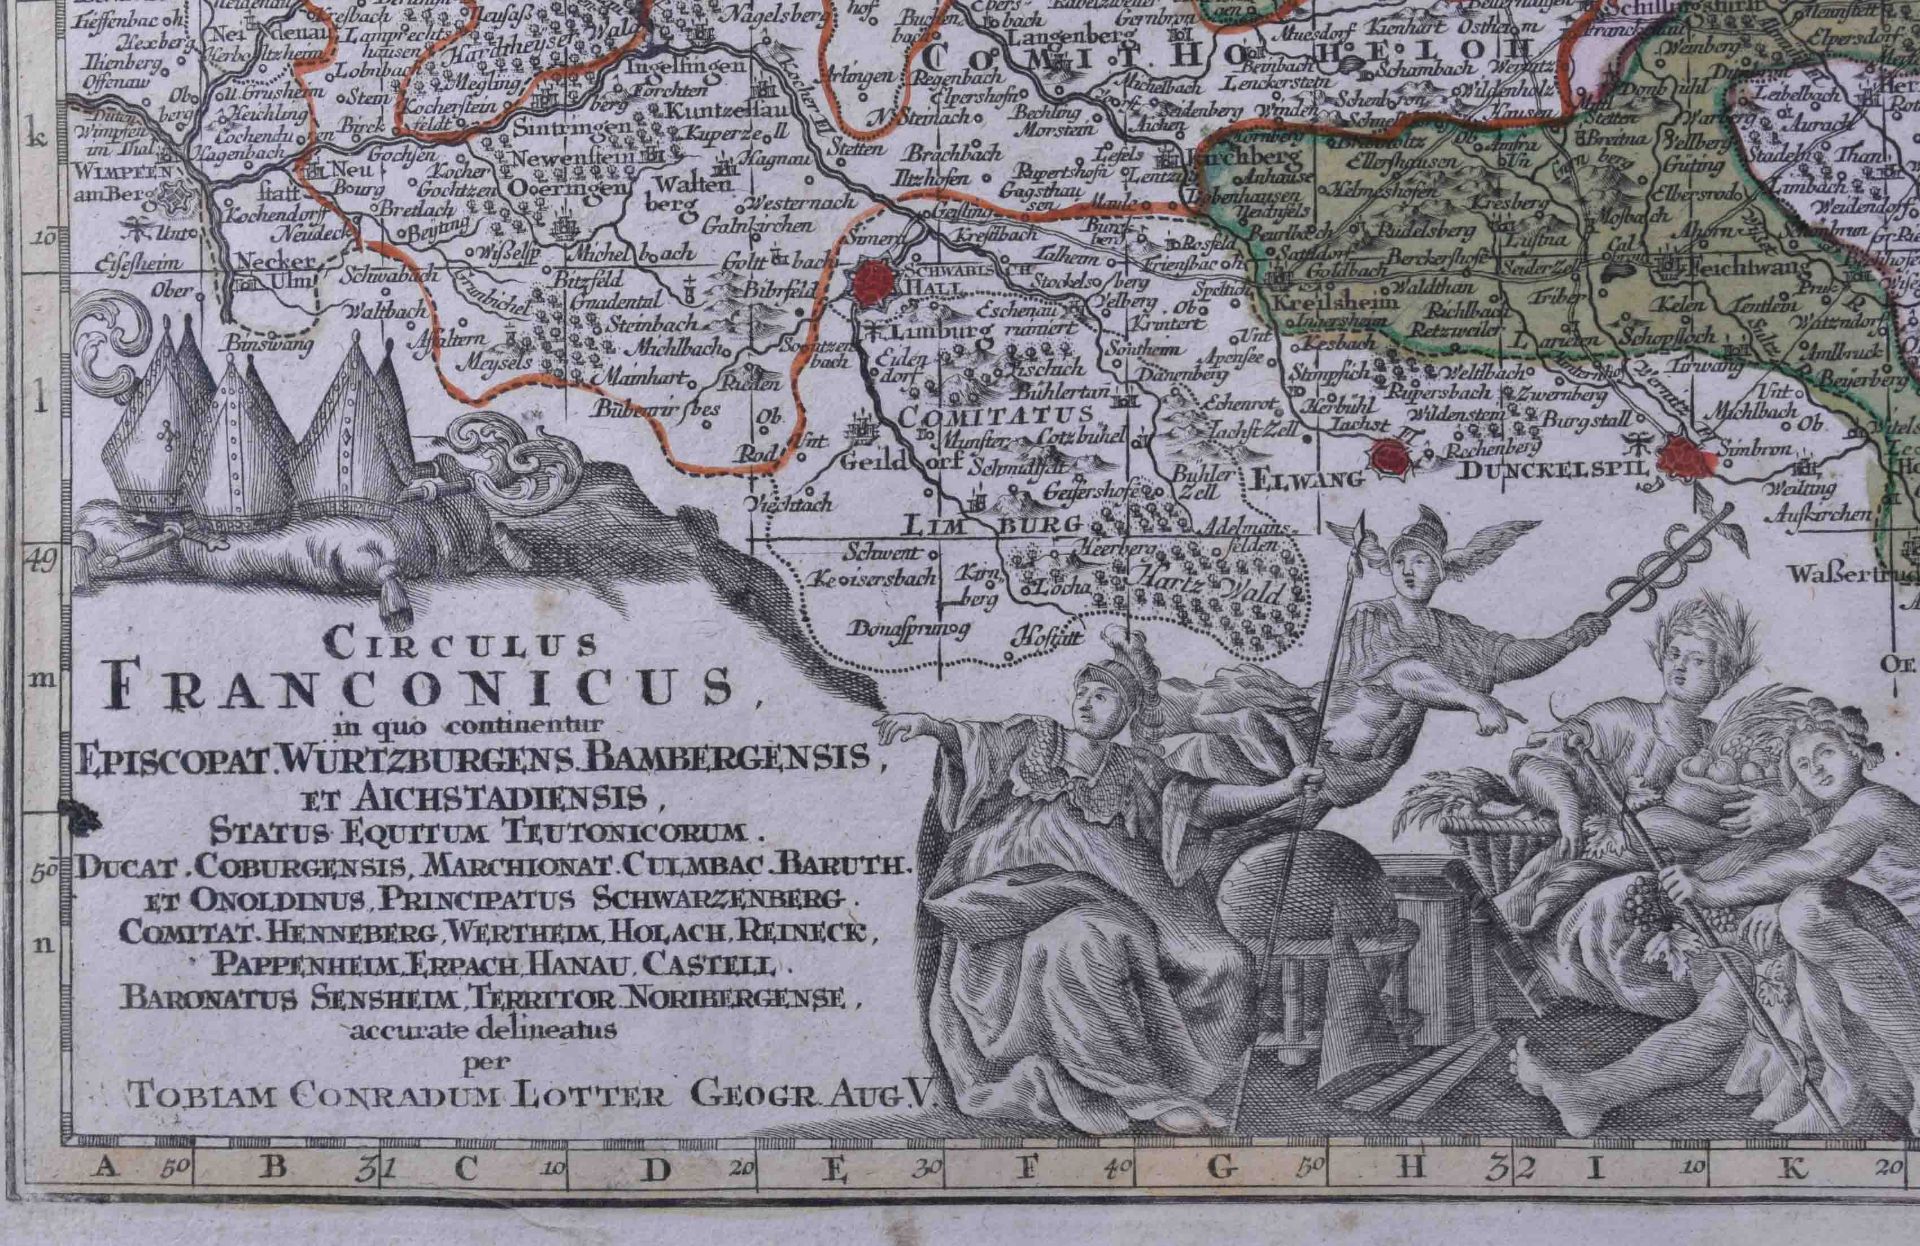 Seutter, Matthäus (1678-1757)"Circulus Franconicus" (Augsburg about 1720)in quo continentur - Bild 4 aus 5